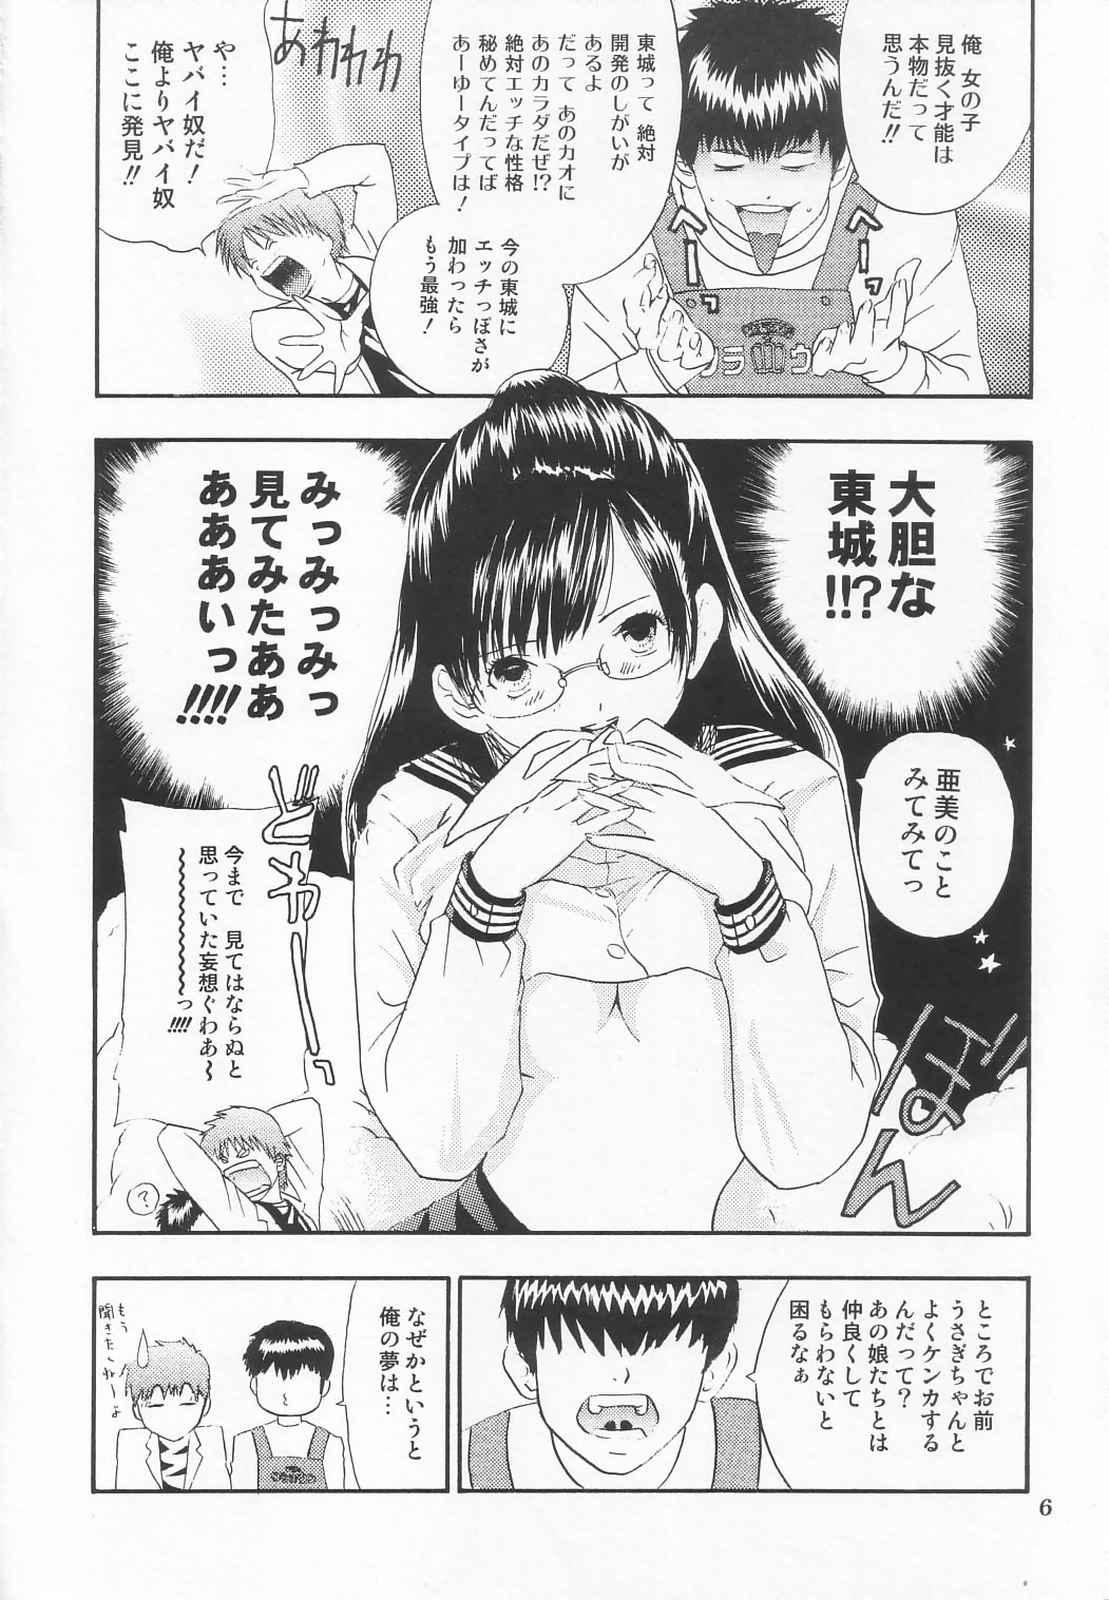 Messy Tokusatsu Magazine x 2003 Fuyu Gou - Sailor moon Ichigo 100 No Condom - Page 8